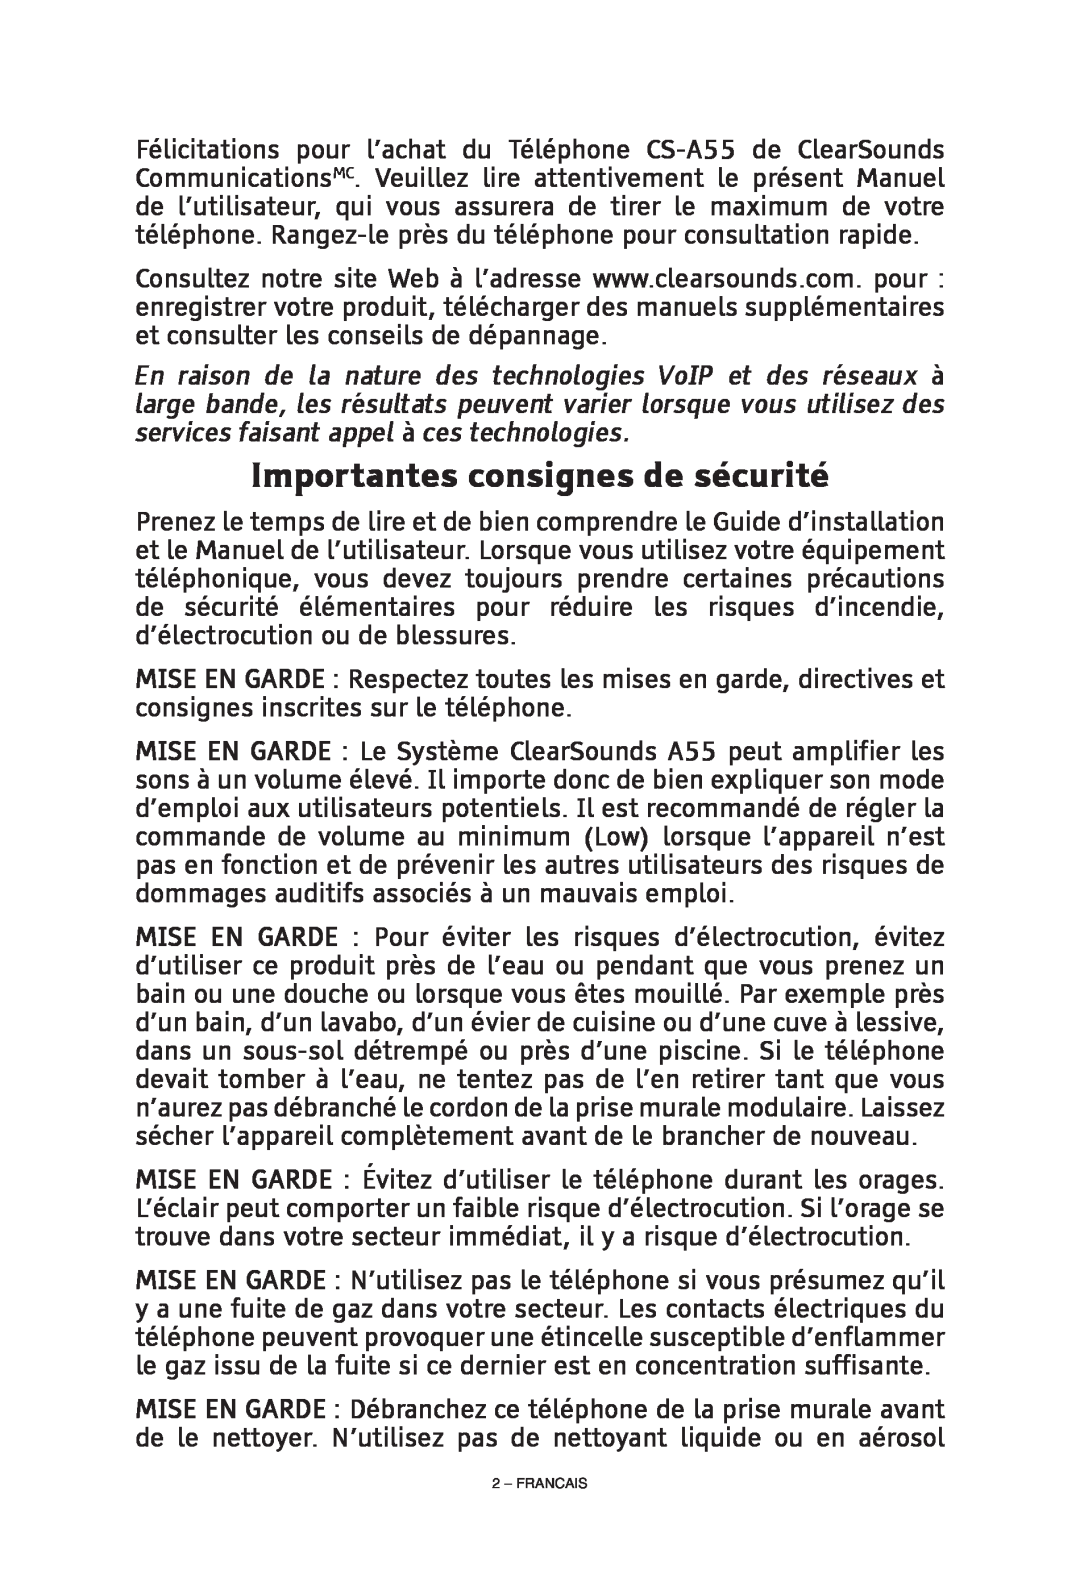 ClearSounds CS-A55 manual Importantes consignes de sécurité, Francais 